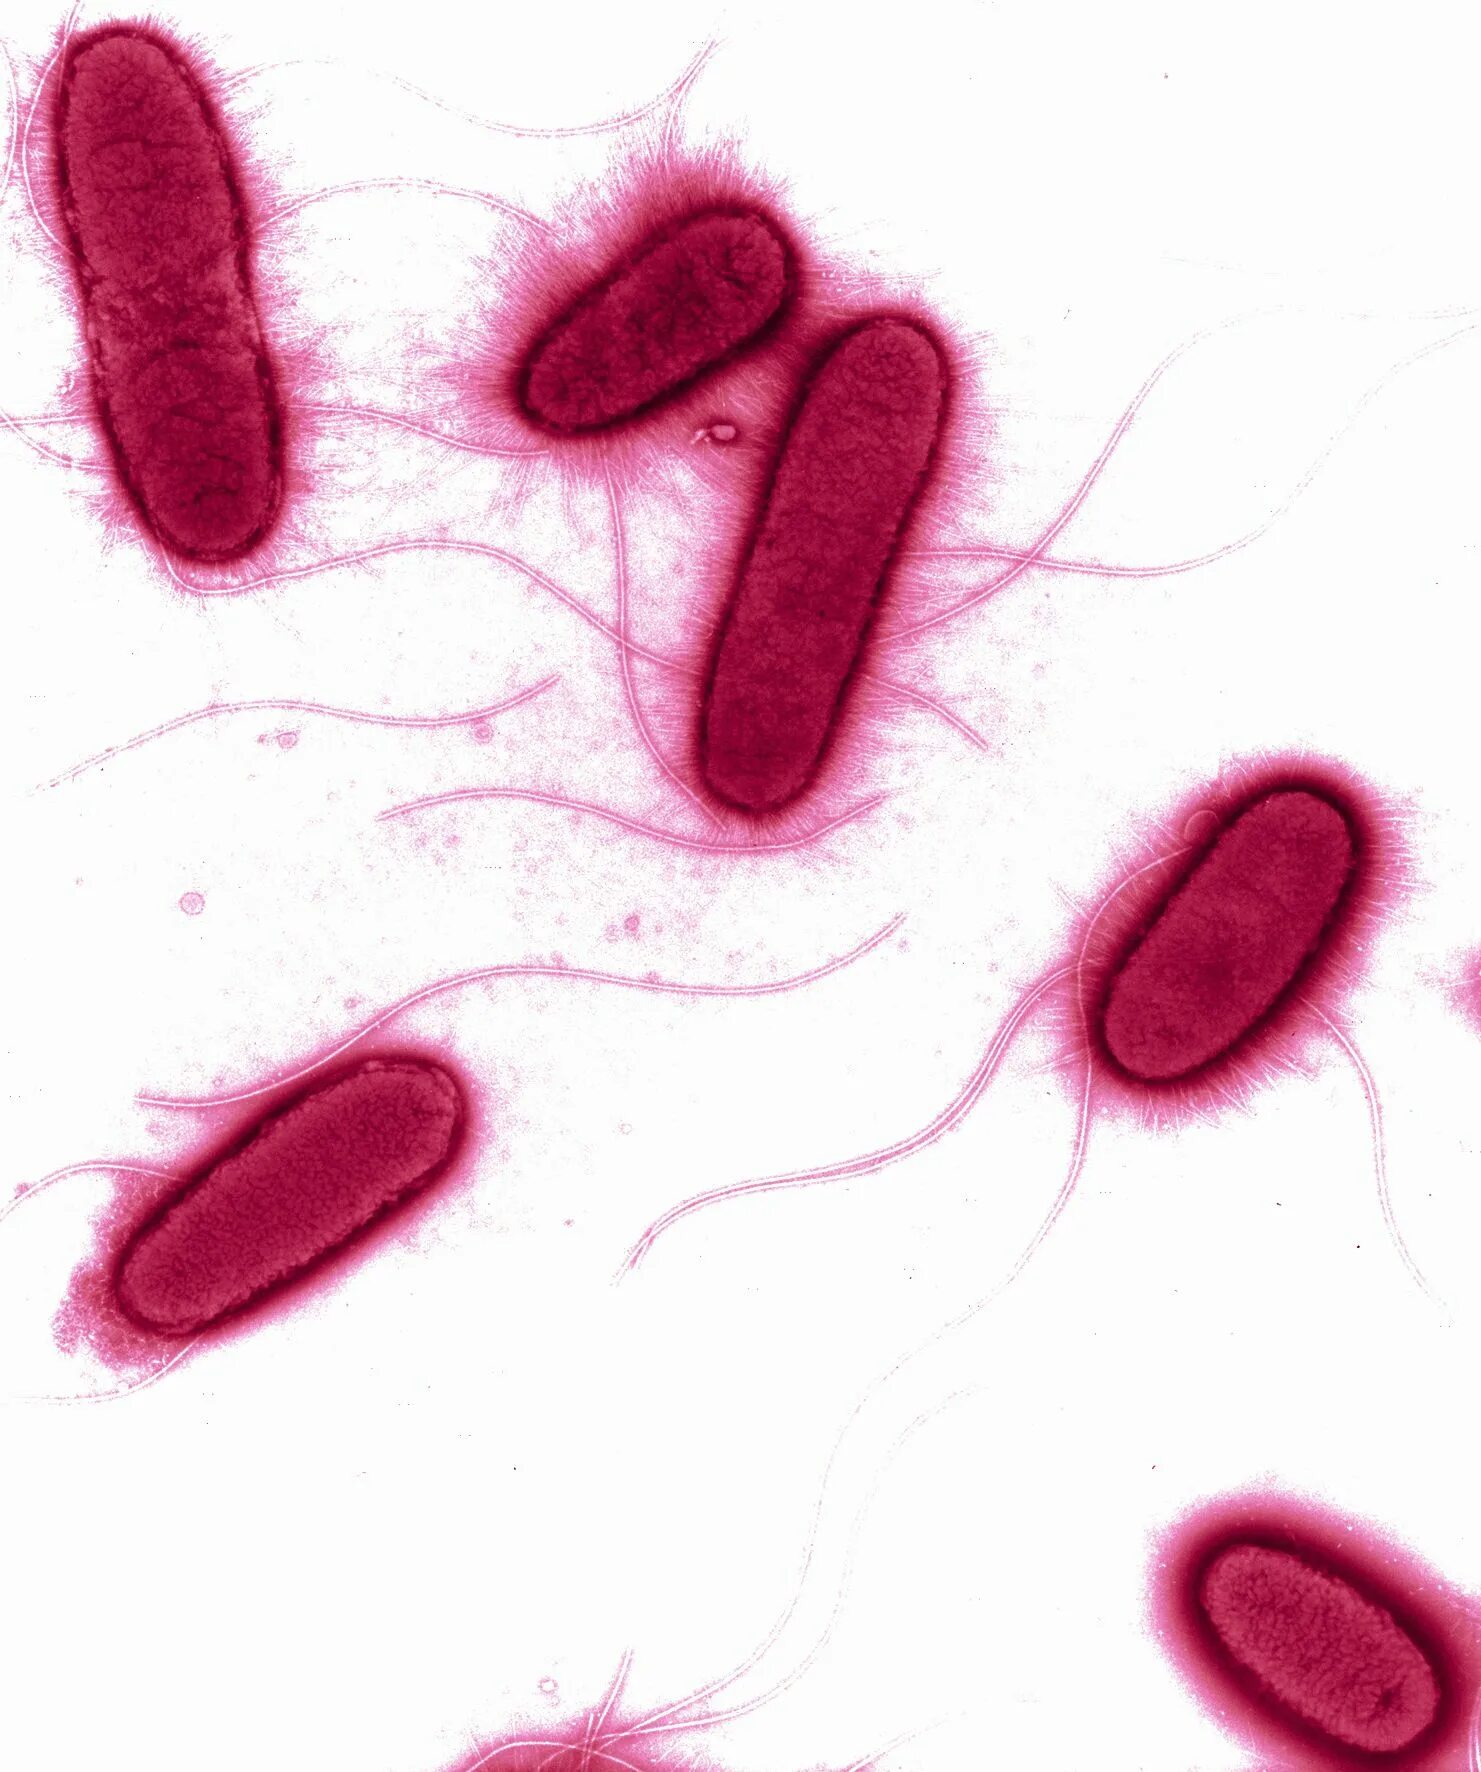 Coli sotwe. Кишечная палочка Escherichia coli. Штаммы кишечной палочки.